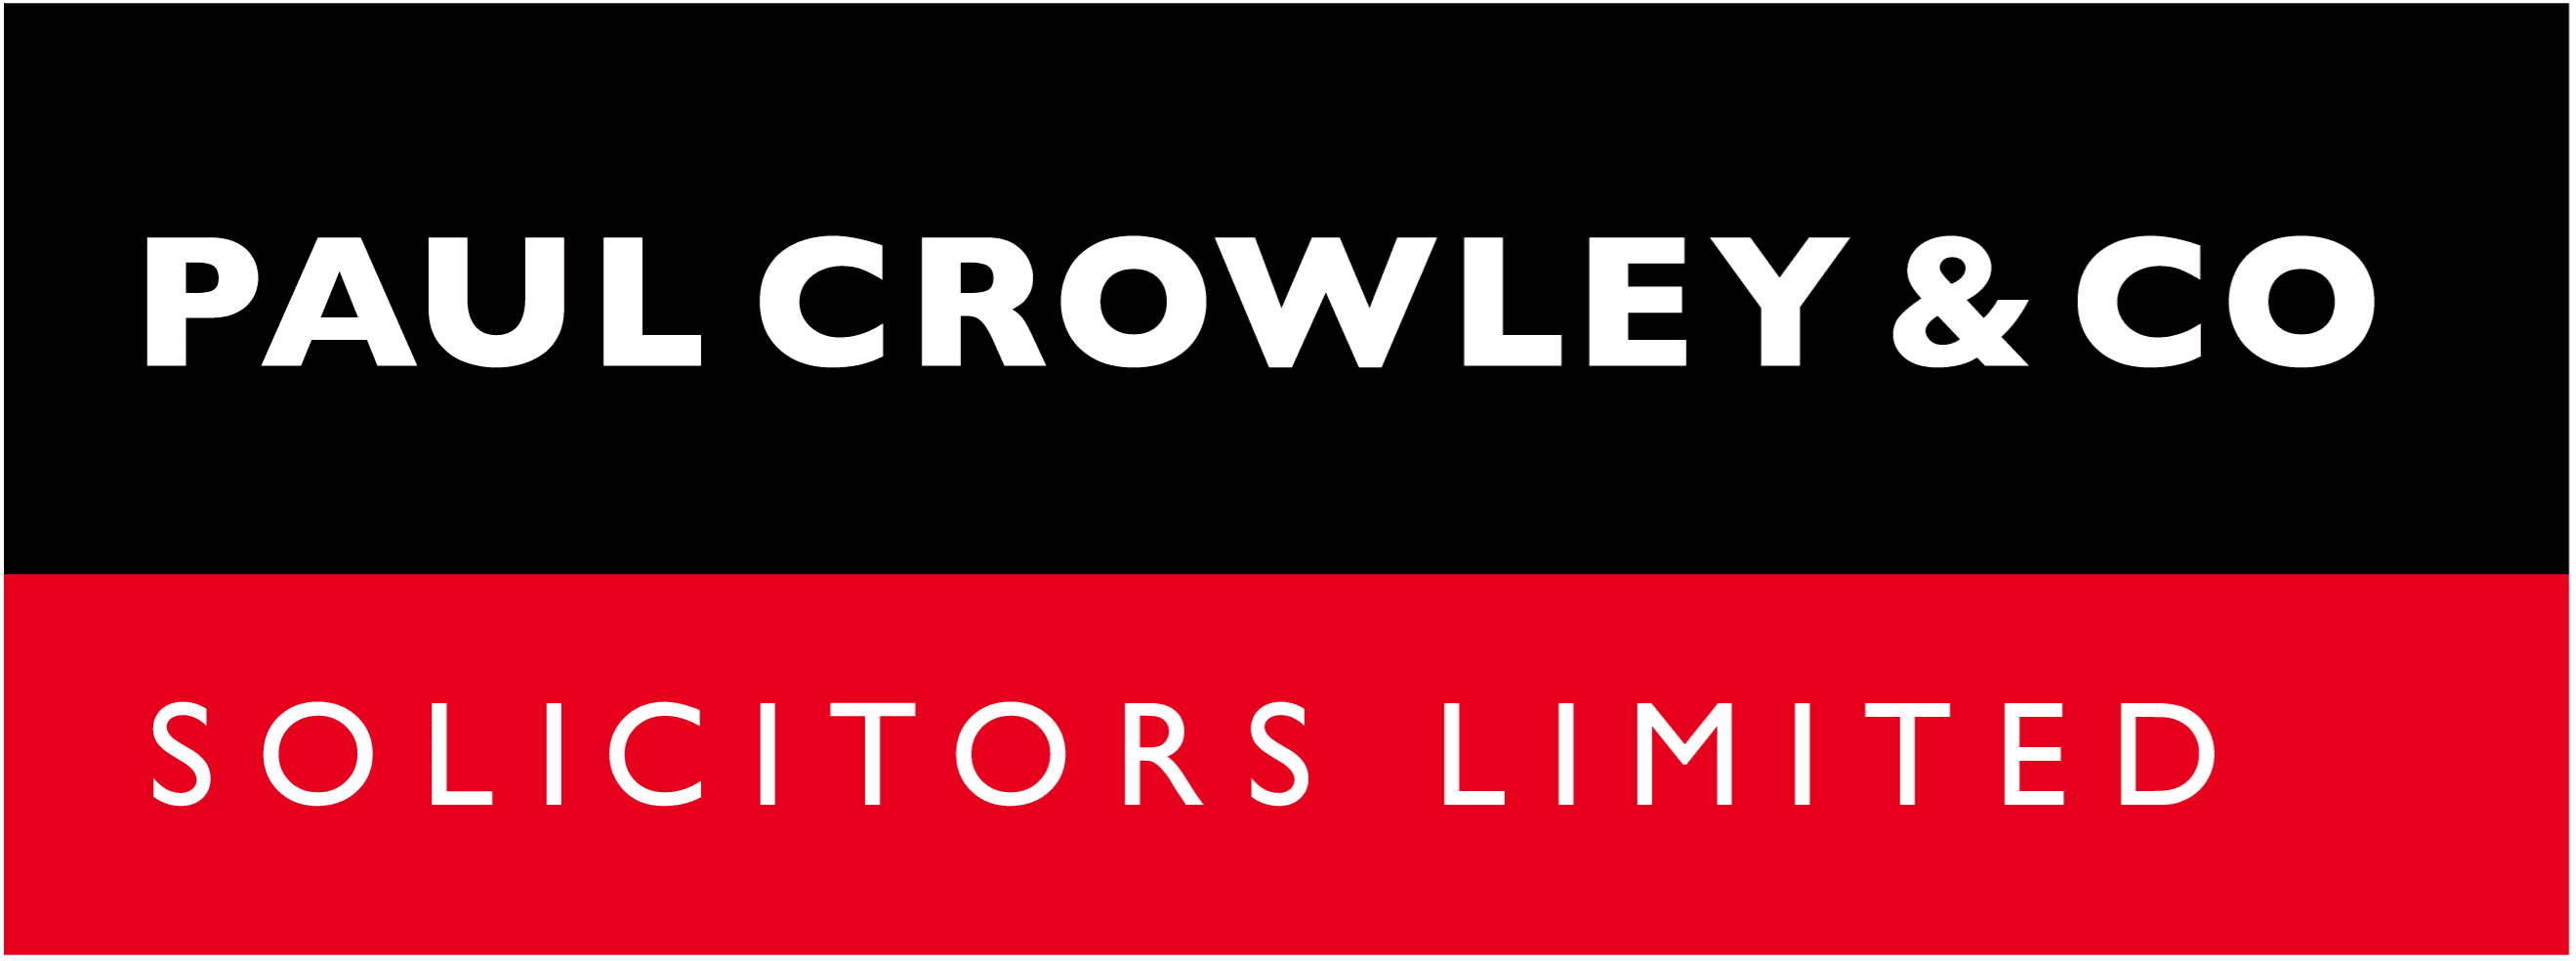 Paul Crowley & Co Solicitors Logo